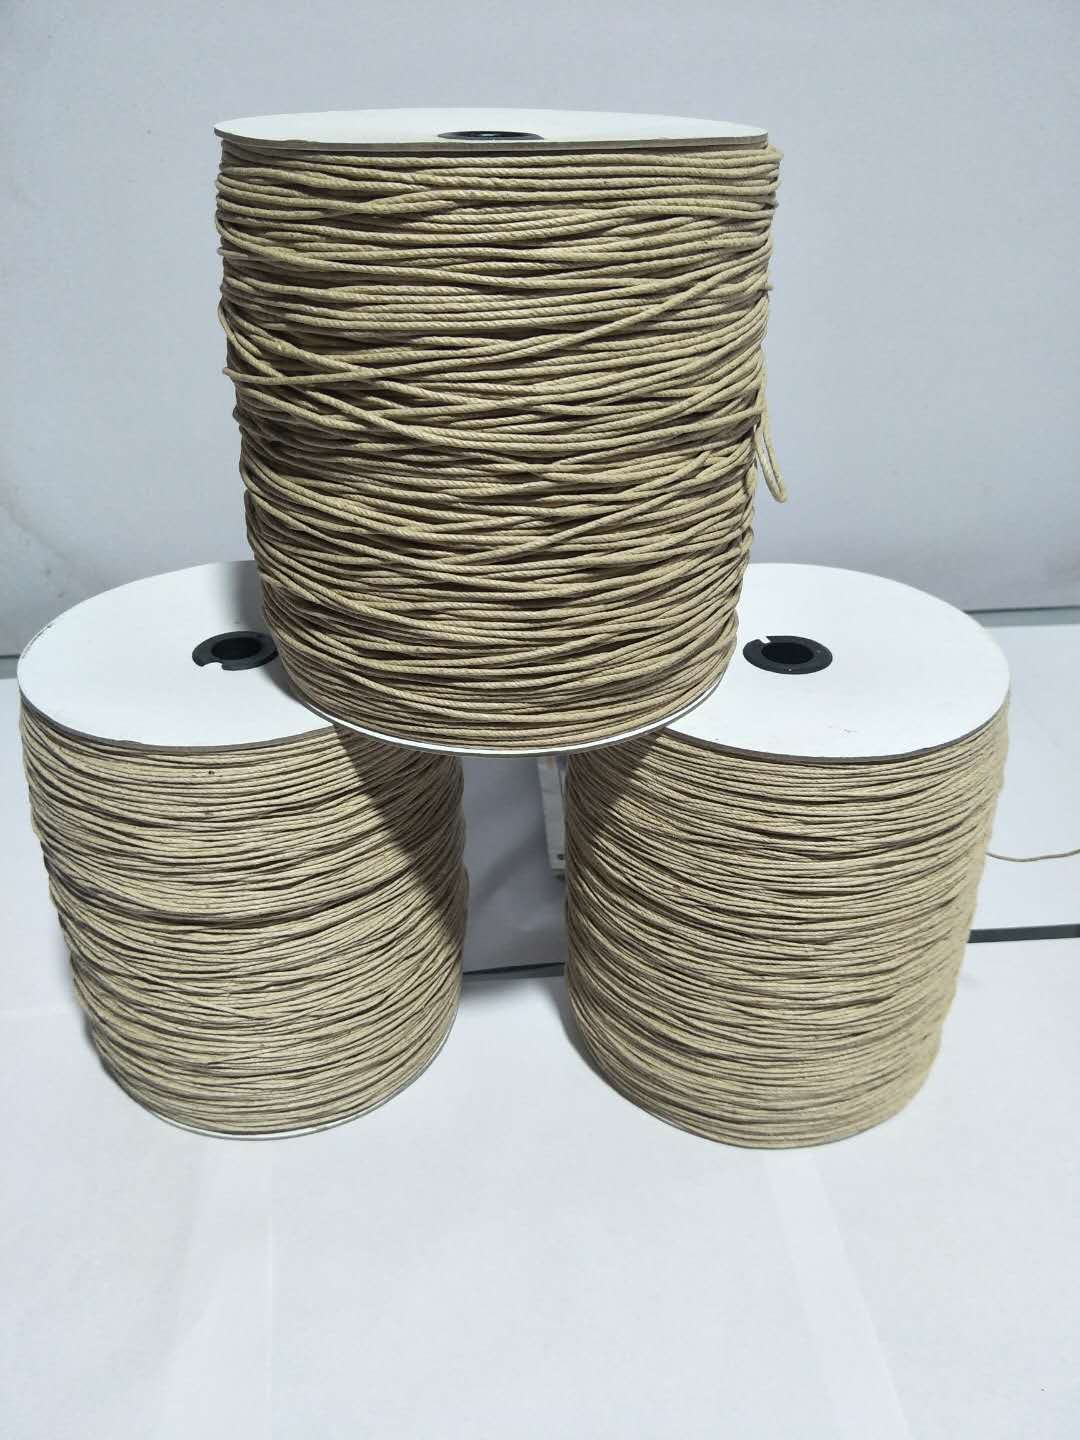 厂家现货供应胚色麻棉绳各种粗细规格品种齐全可按客户需求定染色